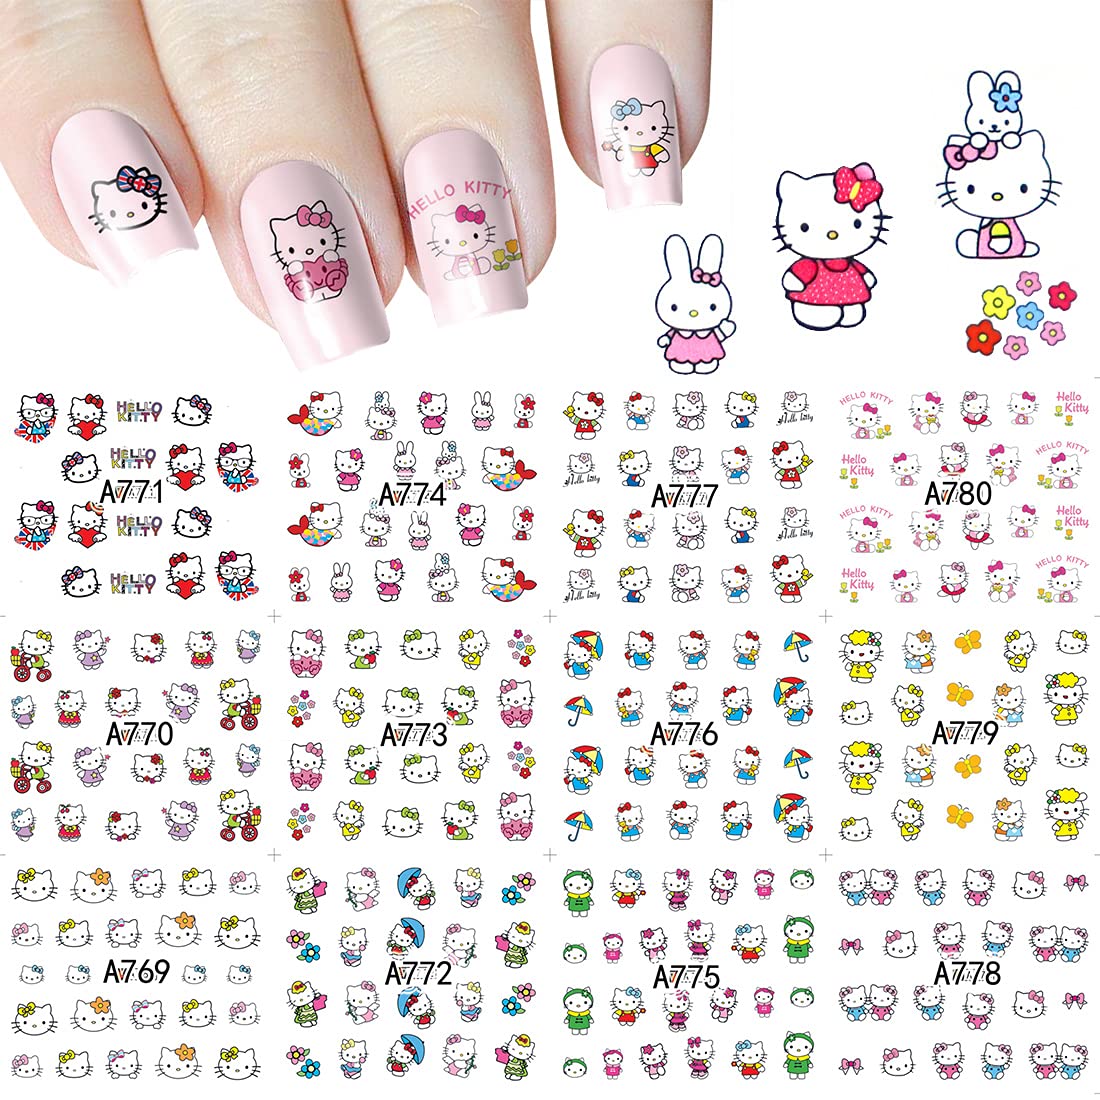 Mango tân trang cho bộ móng tay của bạn với những chiếc sticker hình Hello Kitty dễ thương! Cùng đón chào mùa Giáng Sinh sưởi ấm và tận hưởng không khí đầy lễ hội cùng mẫu nail sticker Kawaii đến từ nhãn hiệu SANTA. Hãy xem qua bộ sưu tập này và chọn cho mình một chiếc sticker ưng ý nhất nhé!